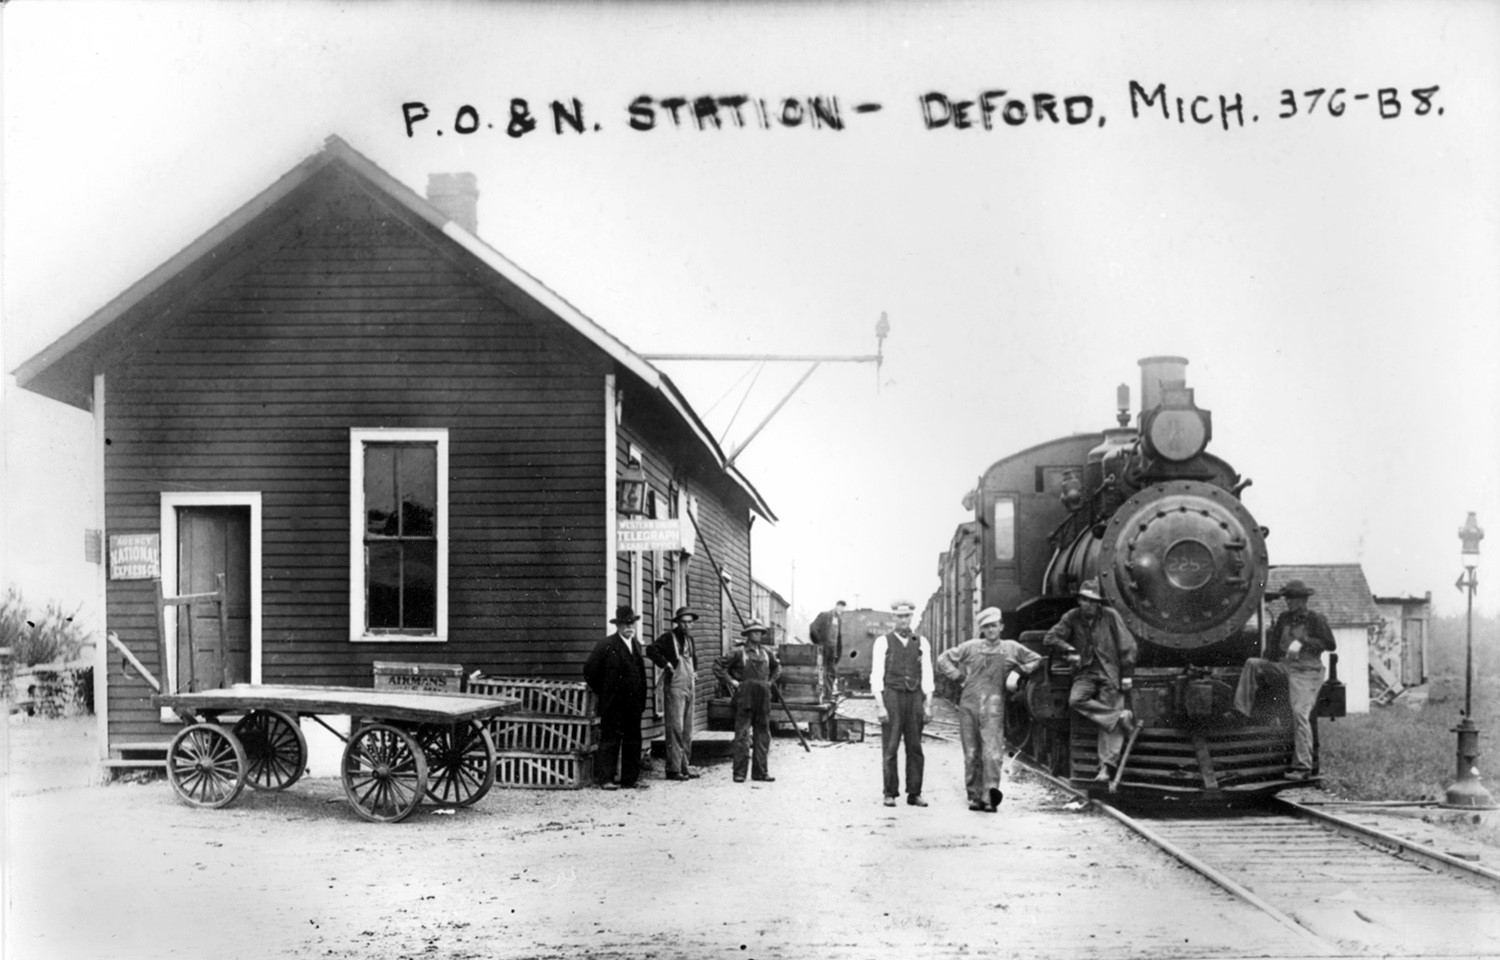 Deford MI Depot and Train